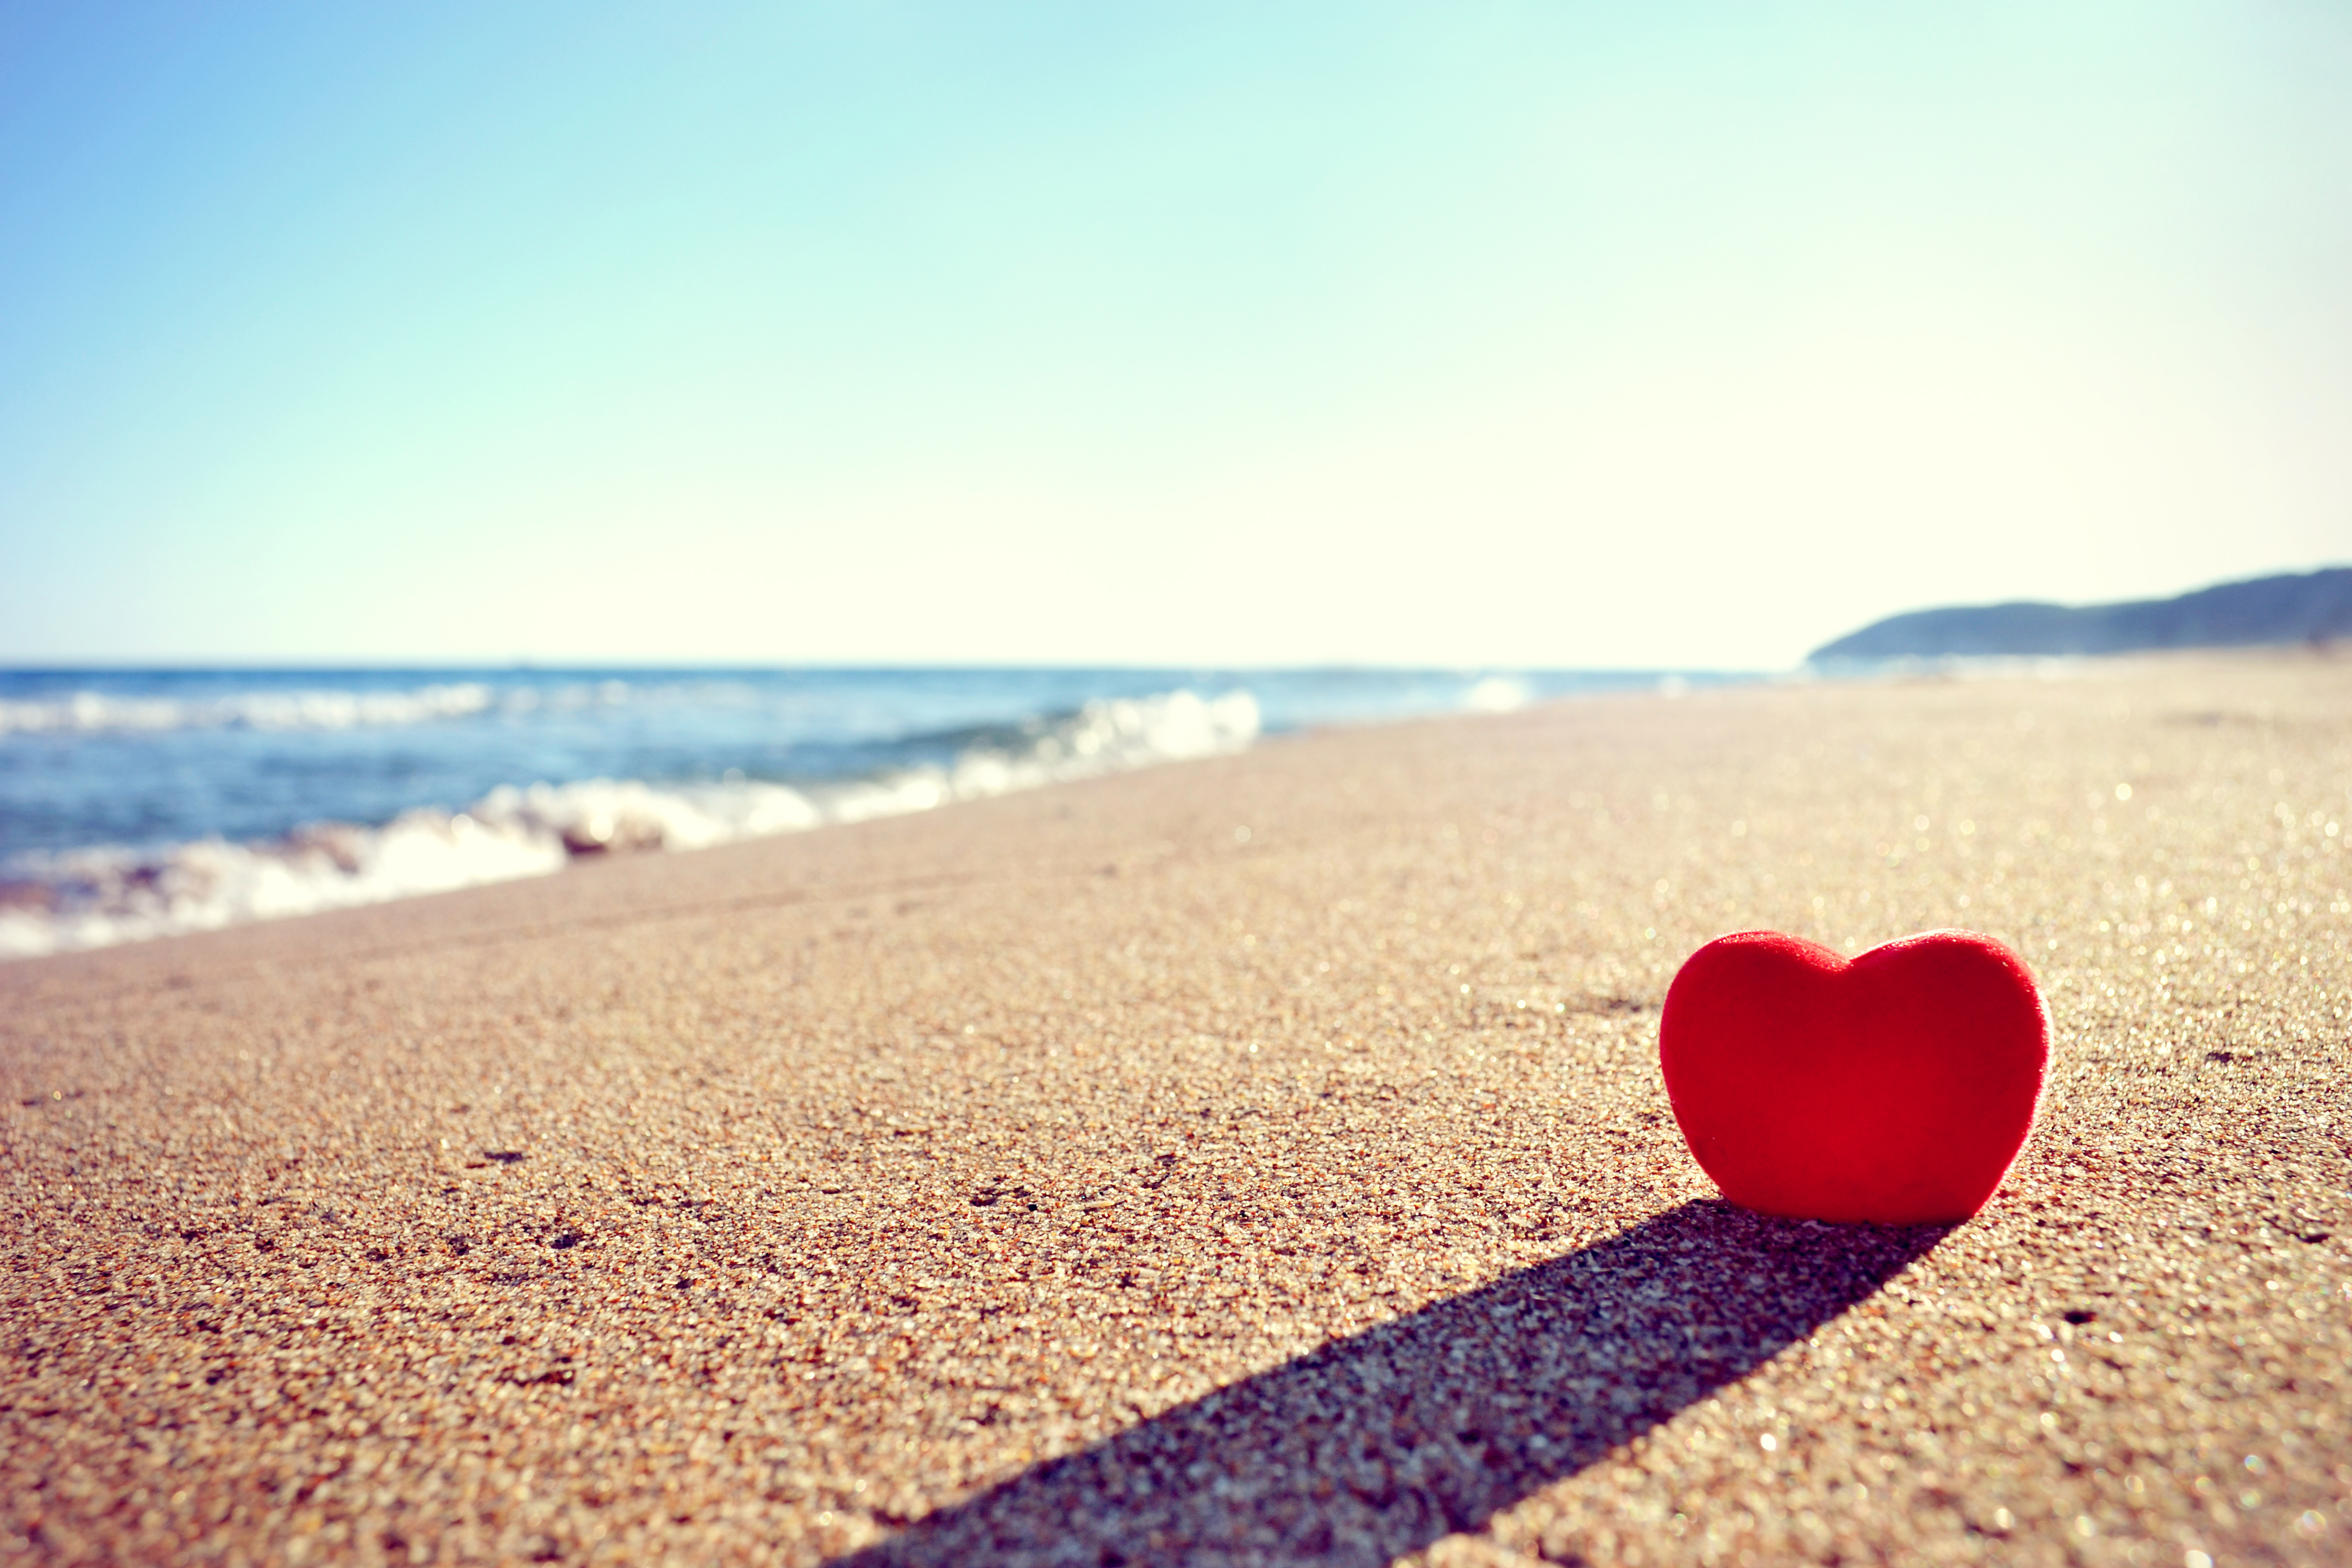 Обои на стол любовь. Сердце на пляже. Обои на рабочий стол любовь. Сердце на фоне моря. Сердечко на пляже.